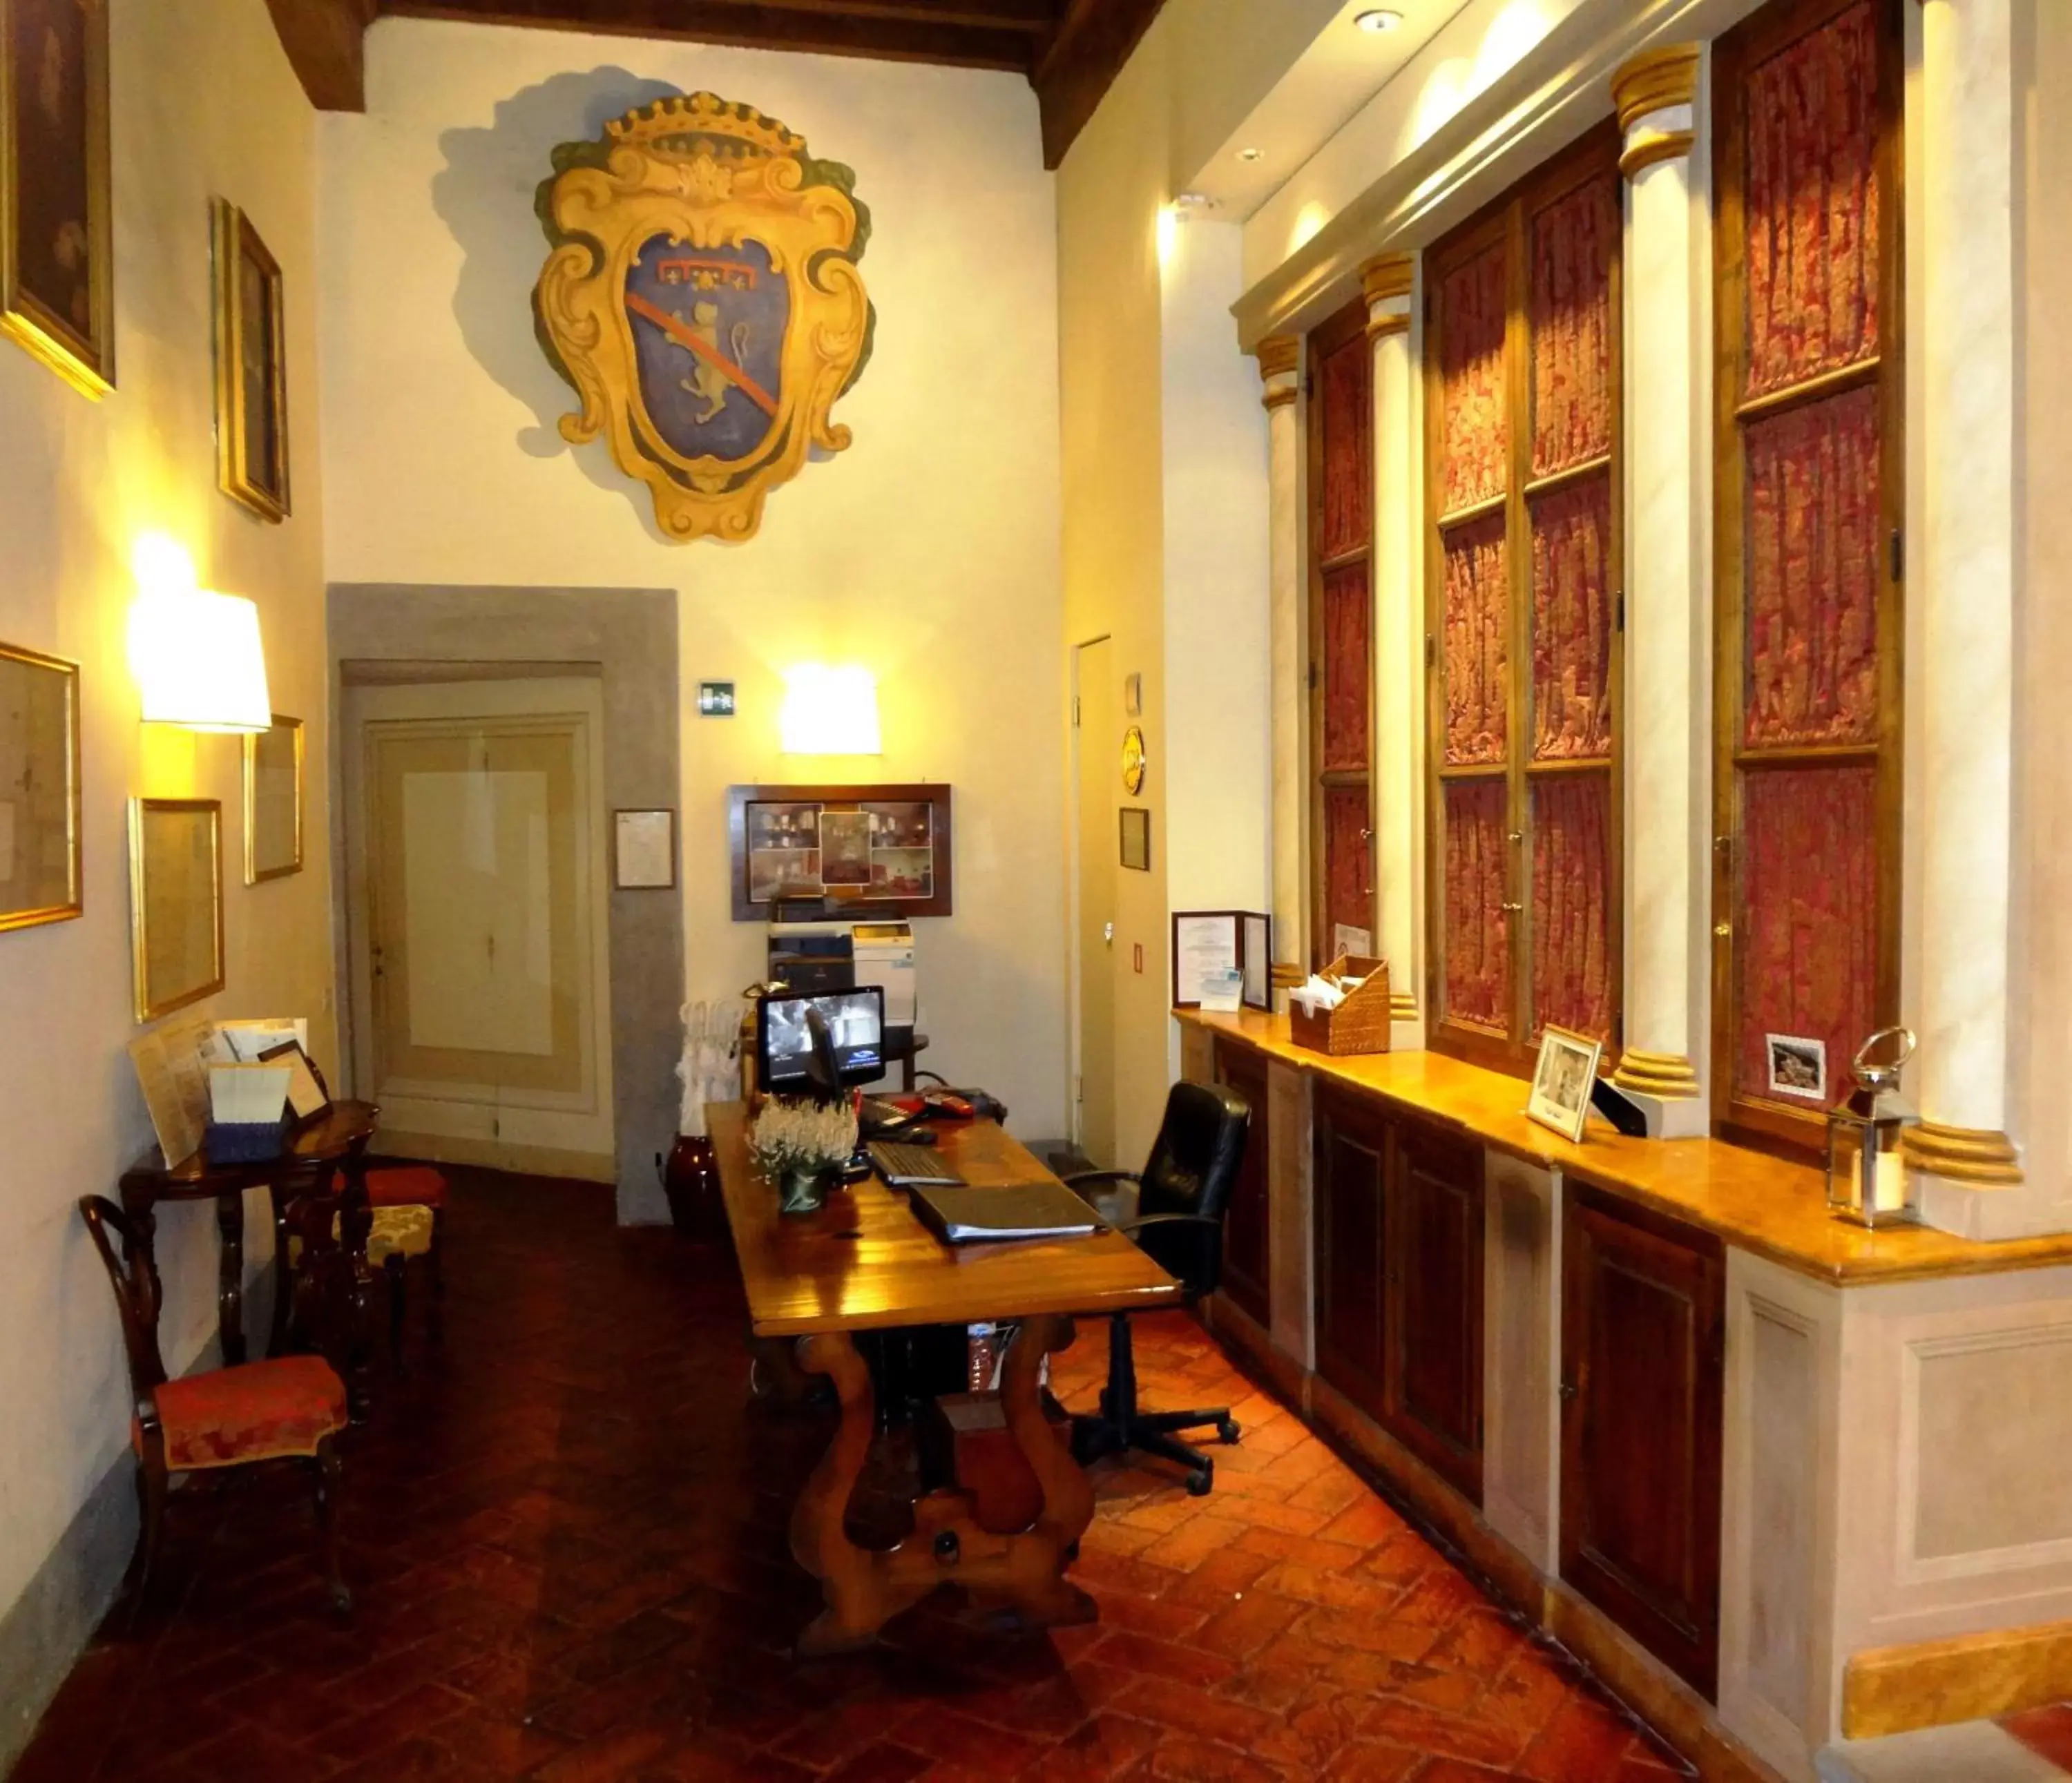 Lobby or reception in Palazzo Niccolini al Duomo